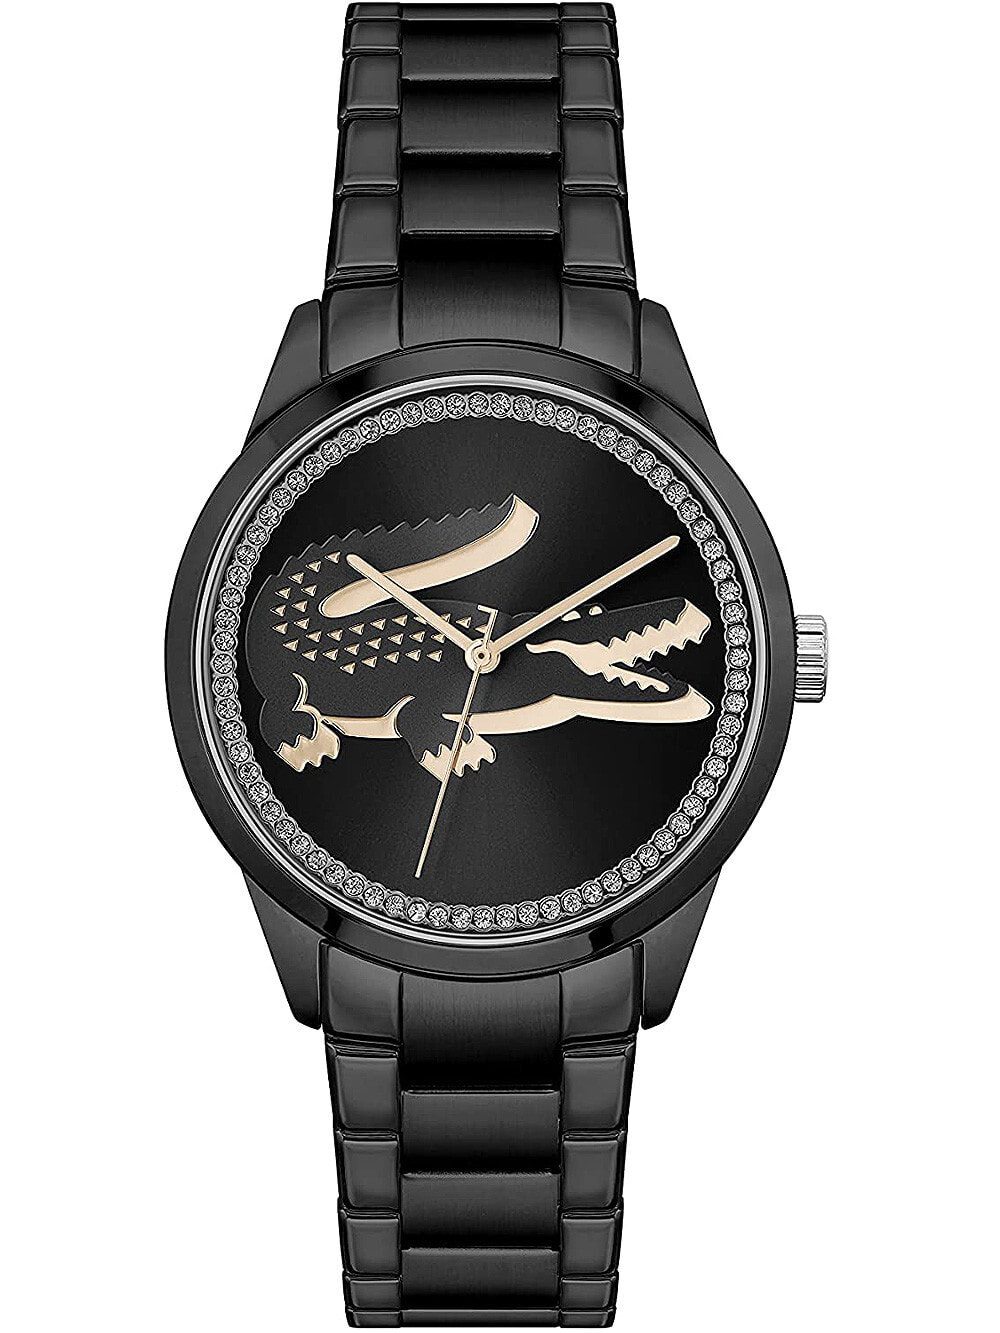 Женские часы с черным циферблатом Lacoste 2001192 Ladycroc Damen 36mm 3ATM